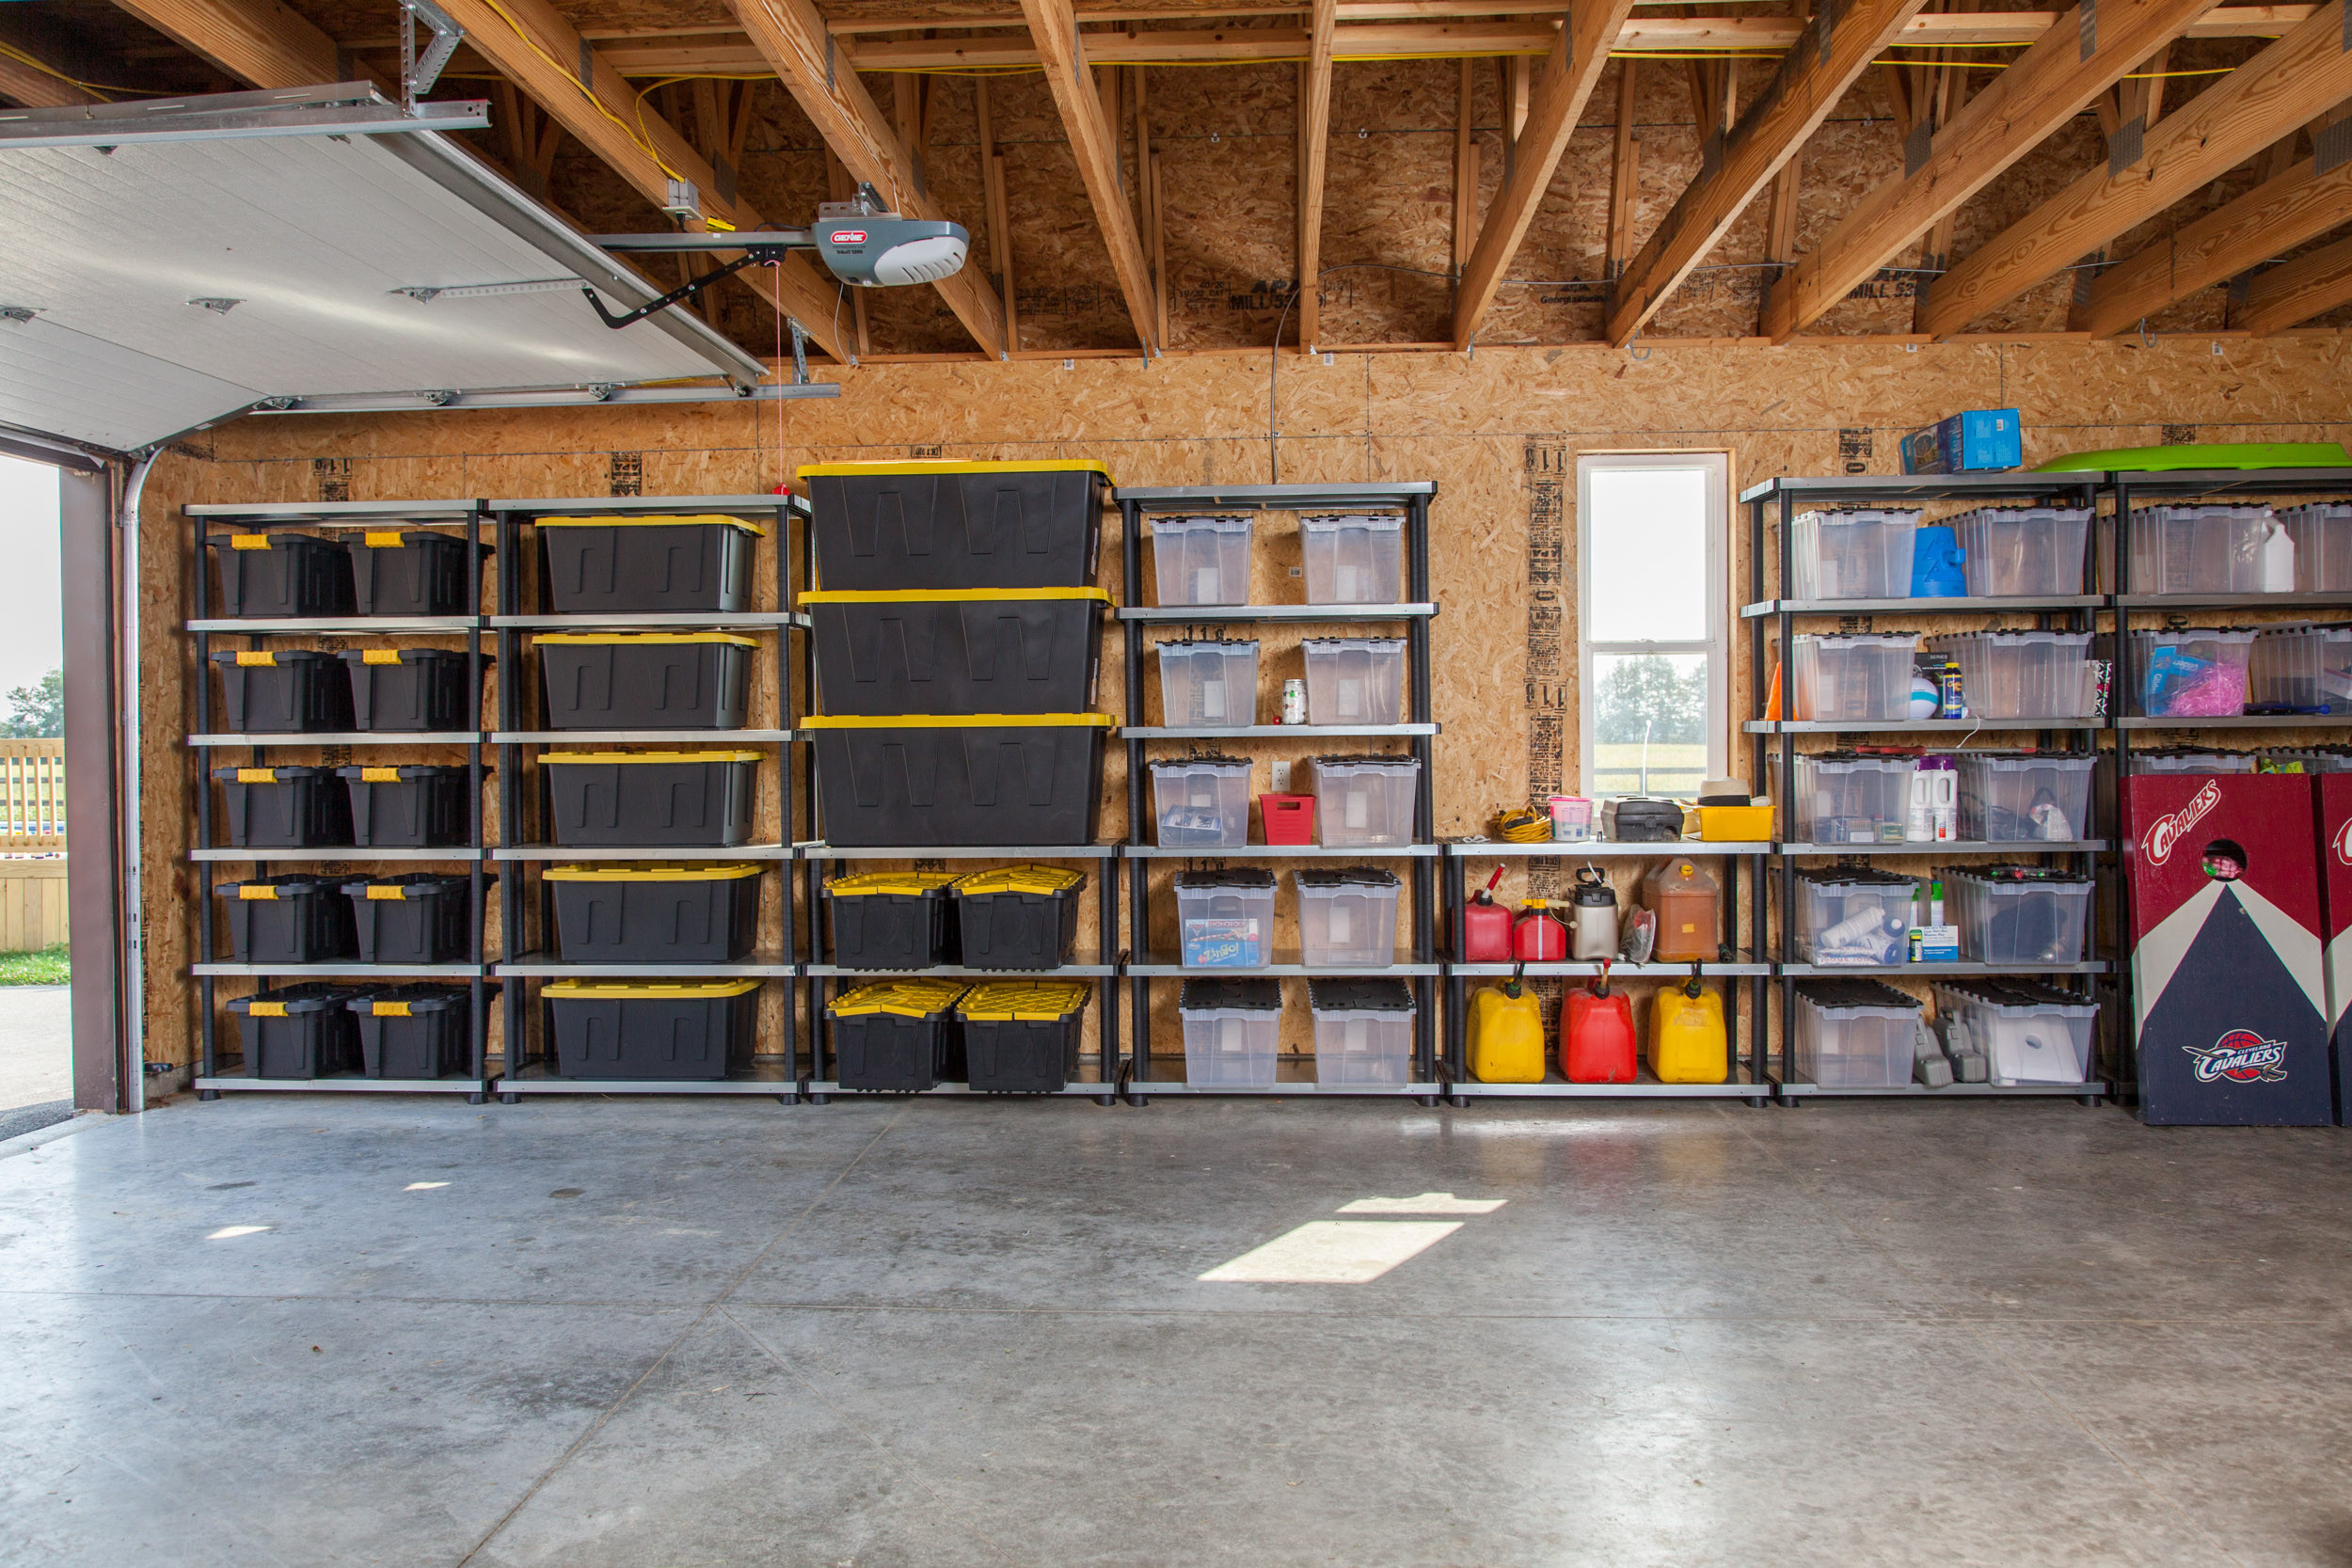 Best ideas about Storage Ideas For Garages
. Save or Pin Best Garage Organization Ideas Now.